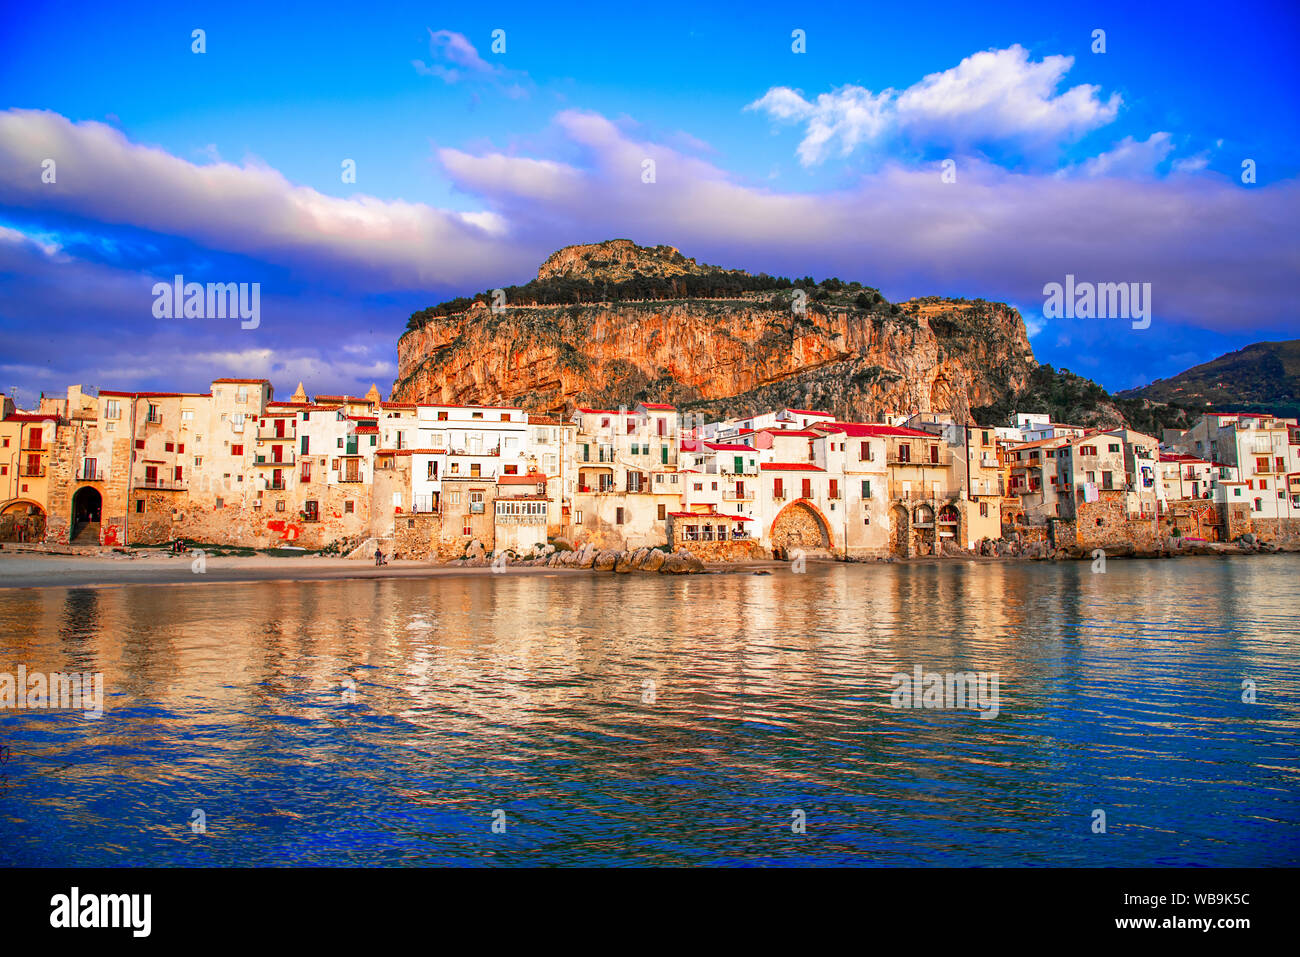 Cefalu, Sicile, Italie : Mer Ligurienne et ville médiévale Cefalu. Banque D'Images